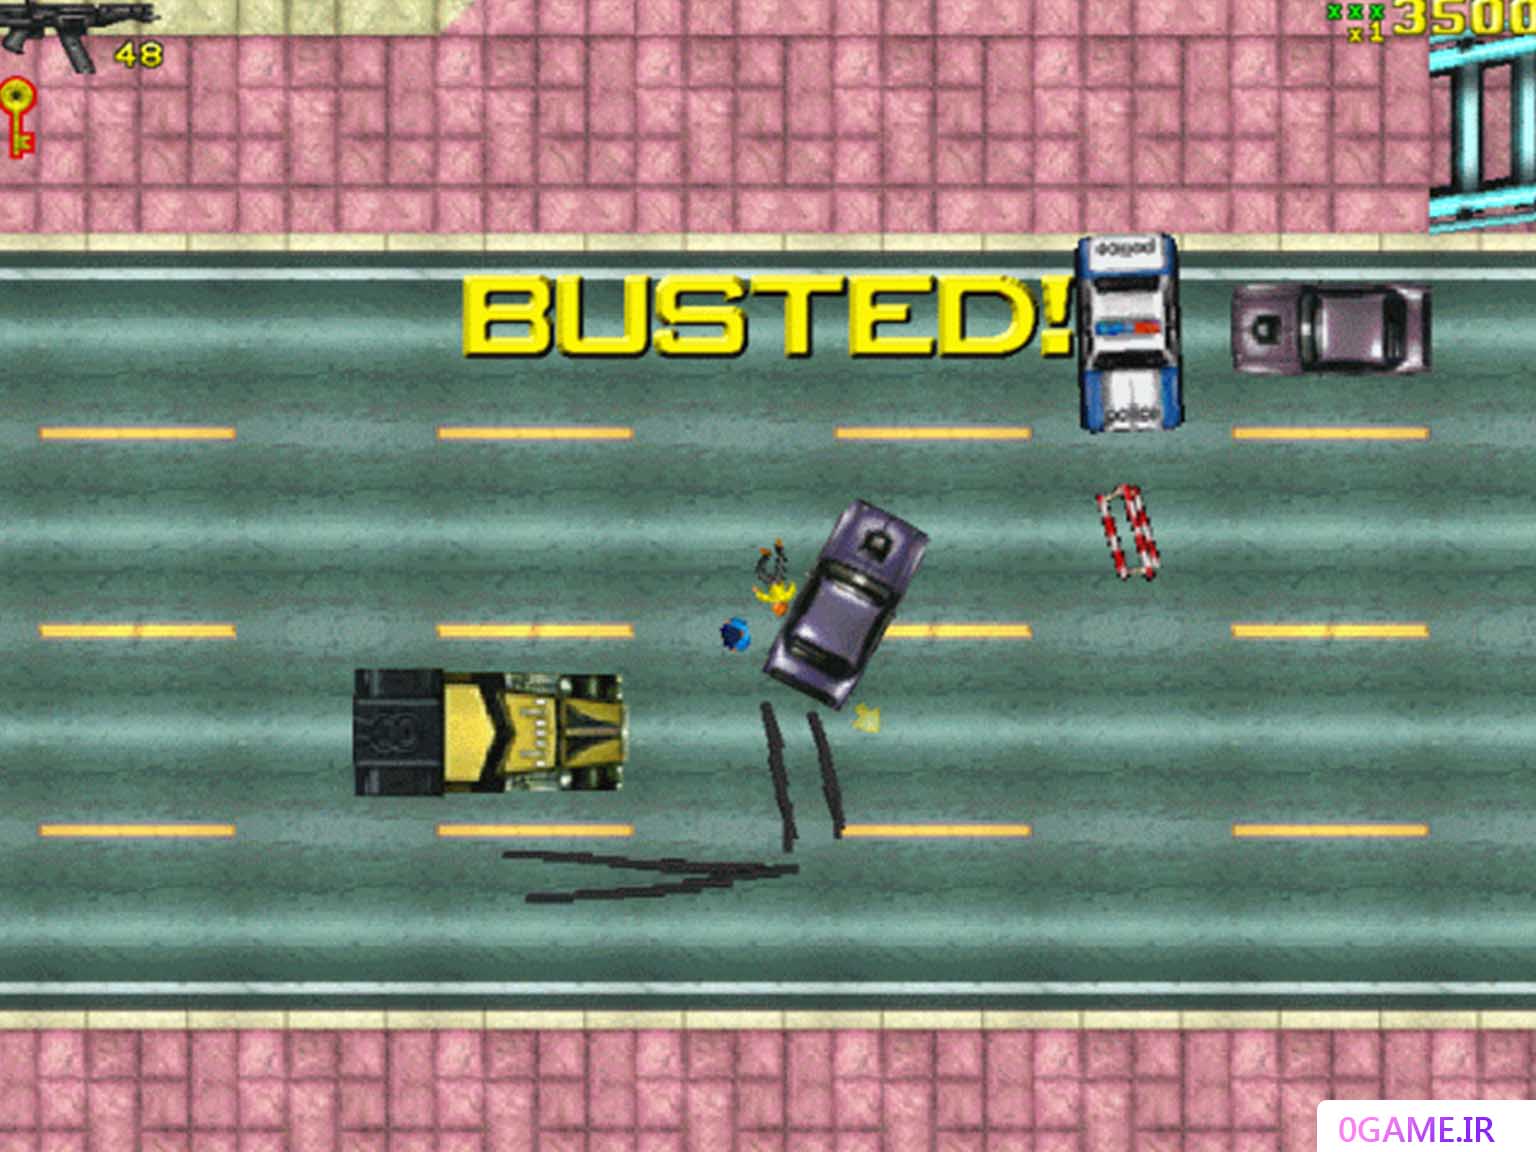 دانلود بازی جی تی ای 1 (Grand Theft Auto) نسخه کامل برای کامپیوتر